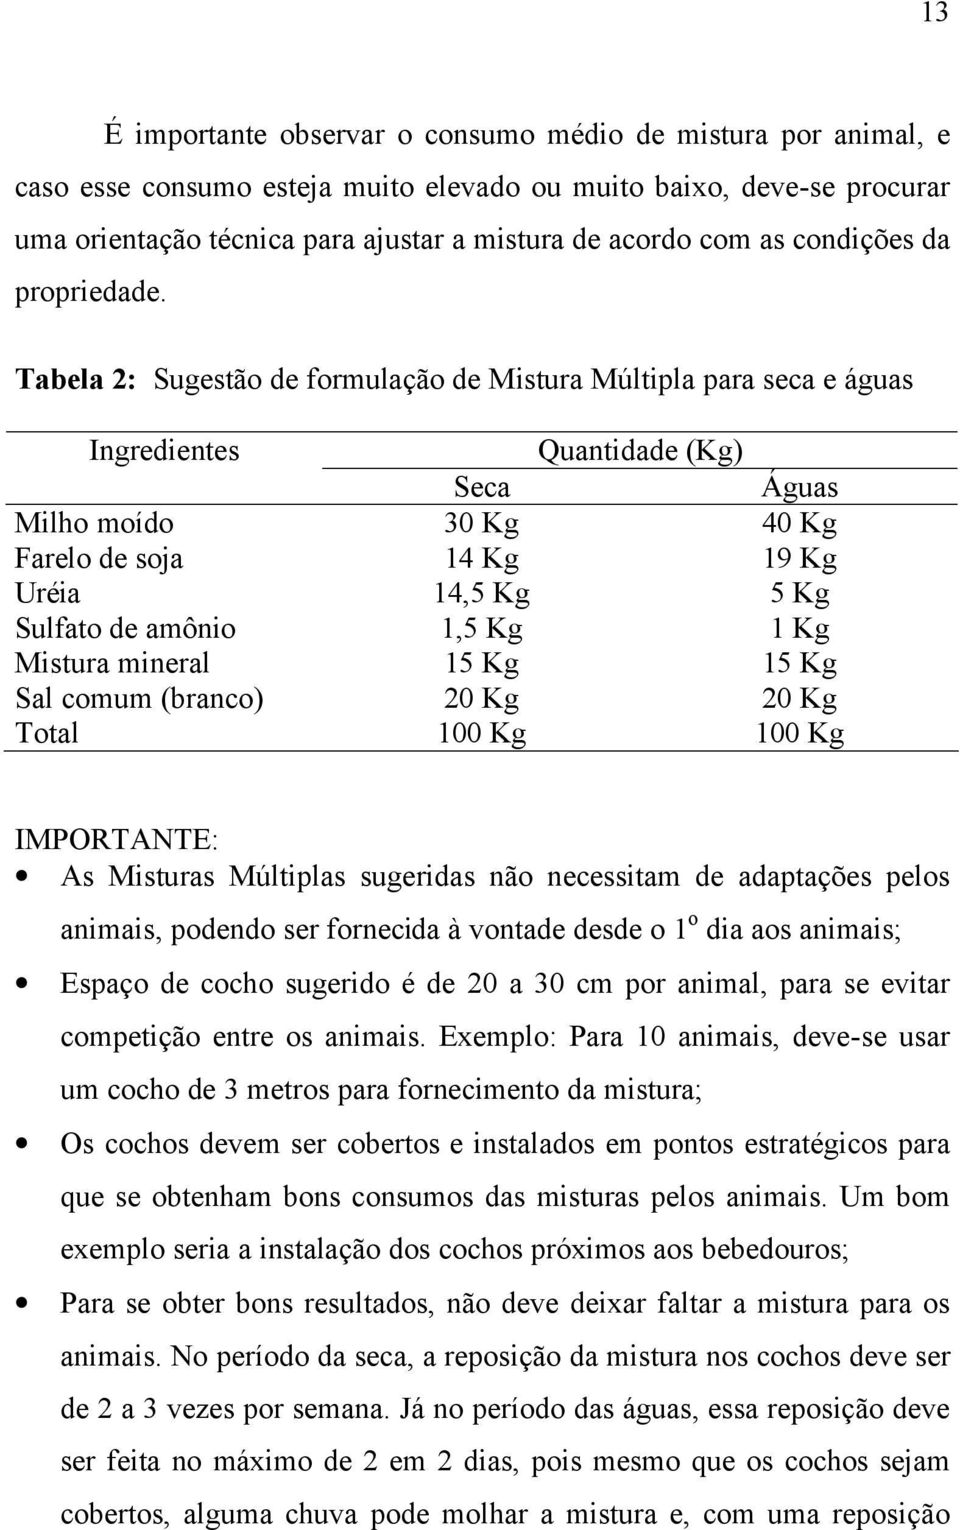 Tabela 2: Sugestão de formulação de Mistura Múltipla para seca e águas Ingredientes Quantidade (Kg) Seca Águas Milho moído 30 Kg 40 Kg Farelo de soja 14 Kg 19 Kg Uréia 14,5 Kg 5 Kg Sulfato de amônio